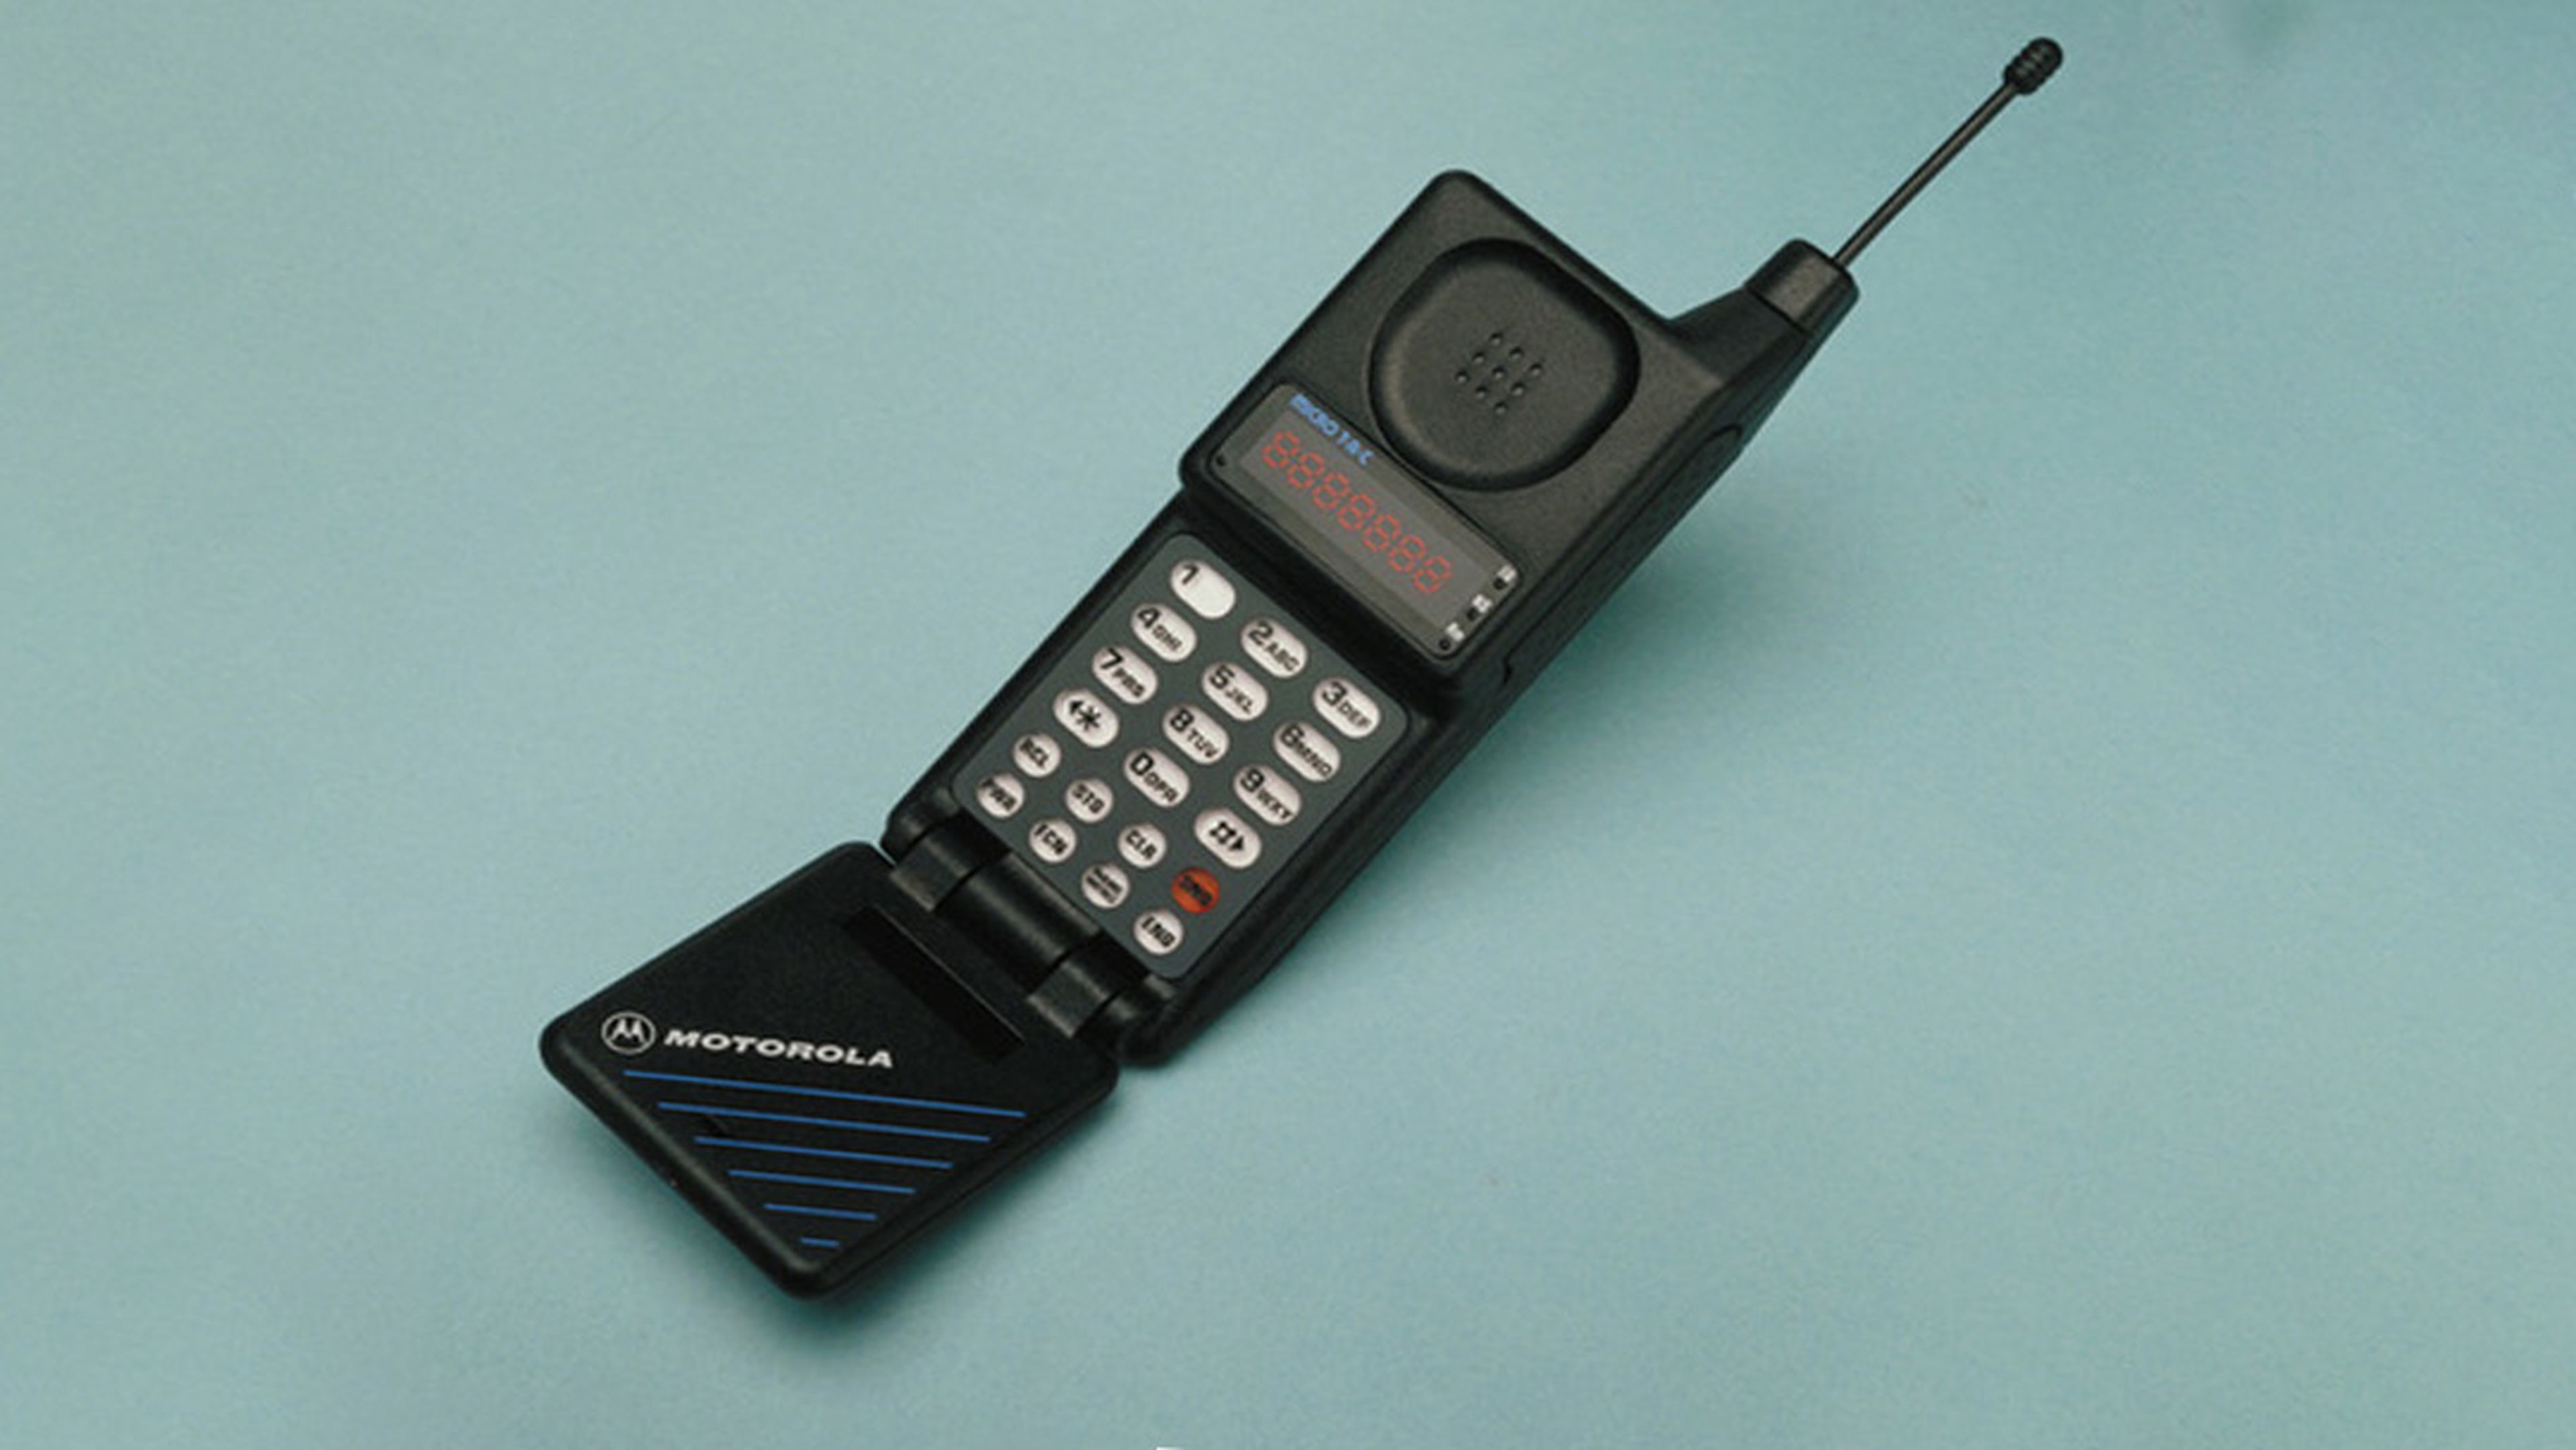 Motorola cumple 90 años innovando en tecnología